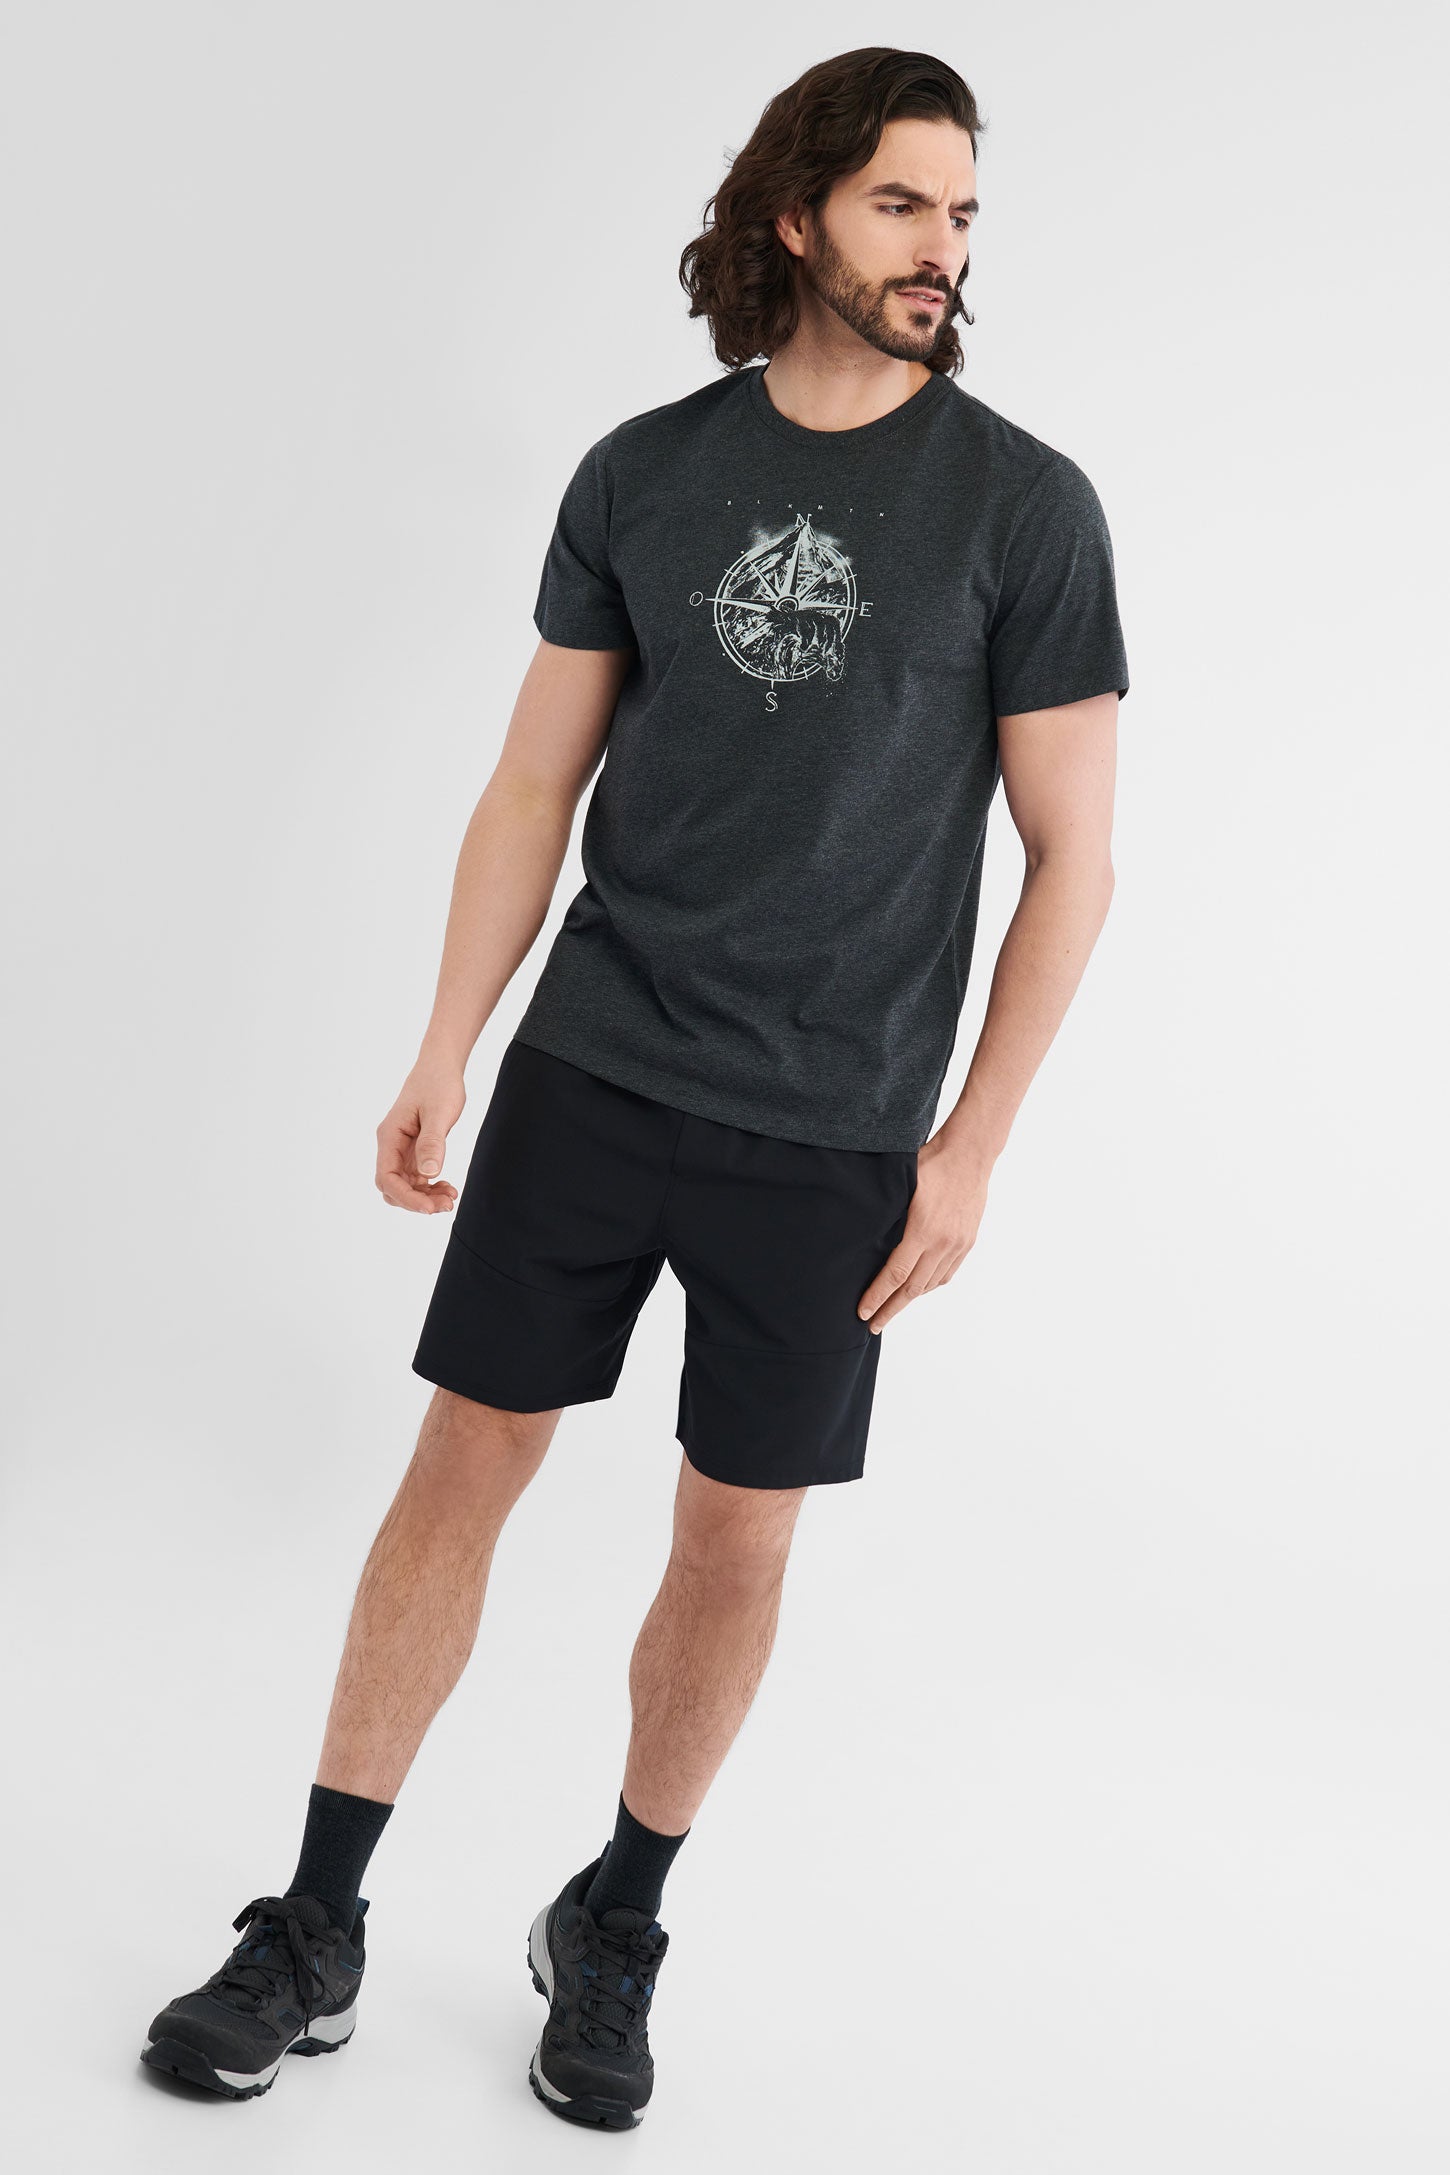 T-shirt polyester recyclé et coton bio BM, 2/50$ - Homme && GRIS